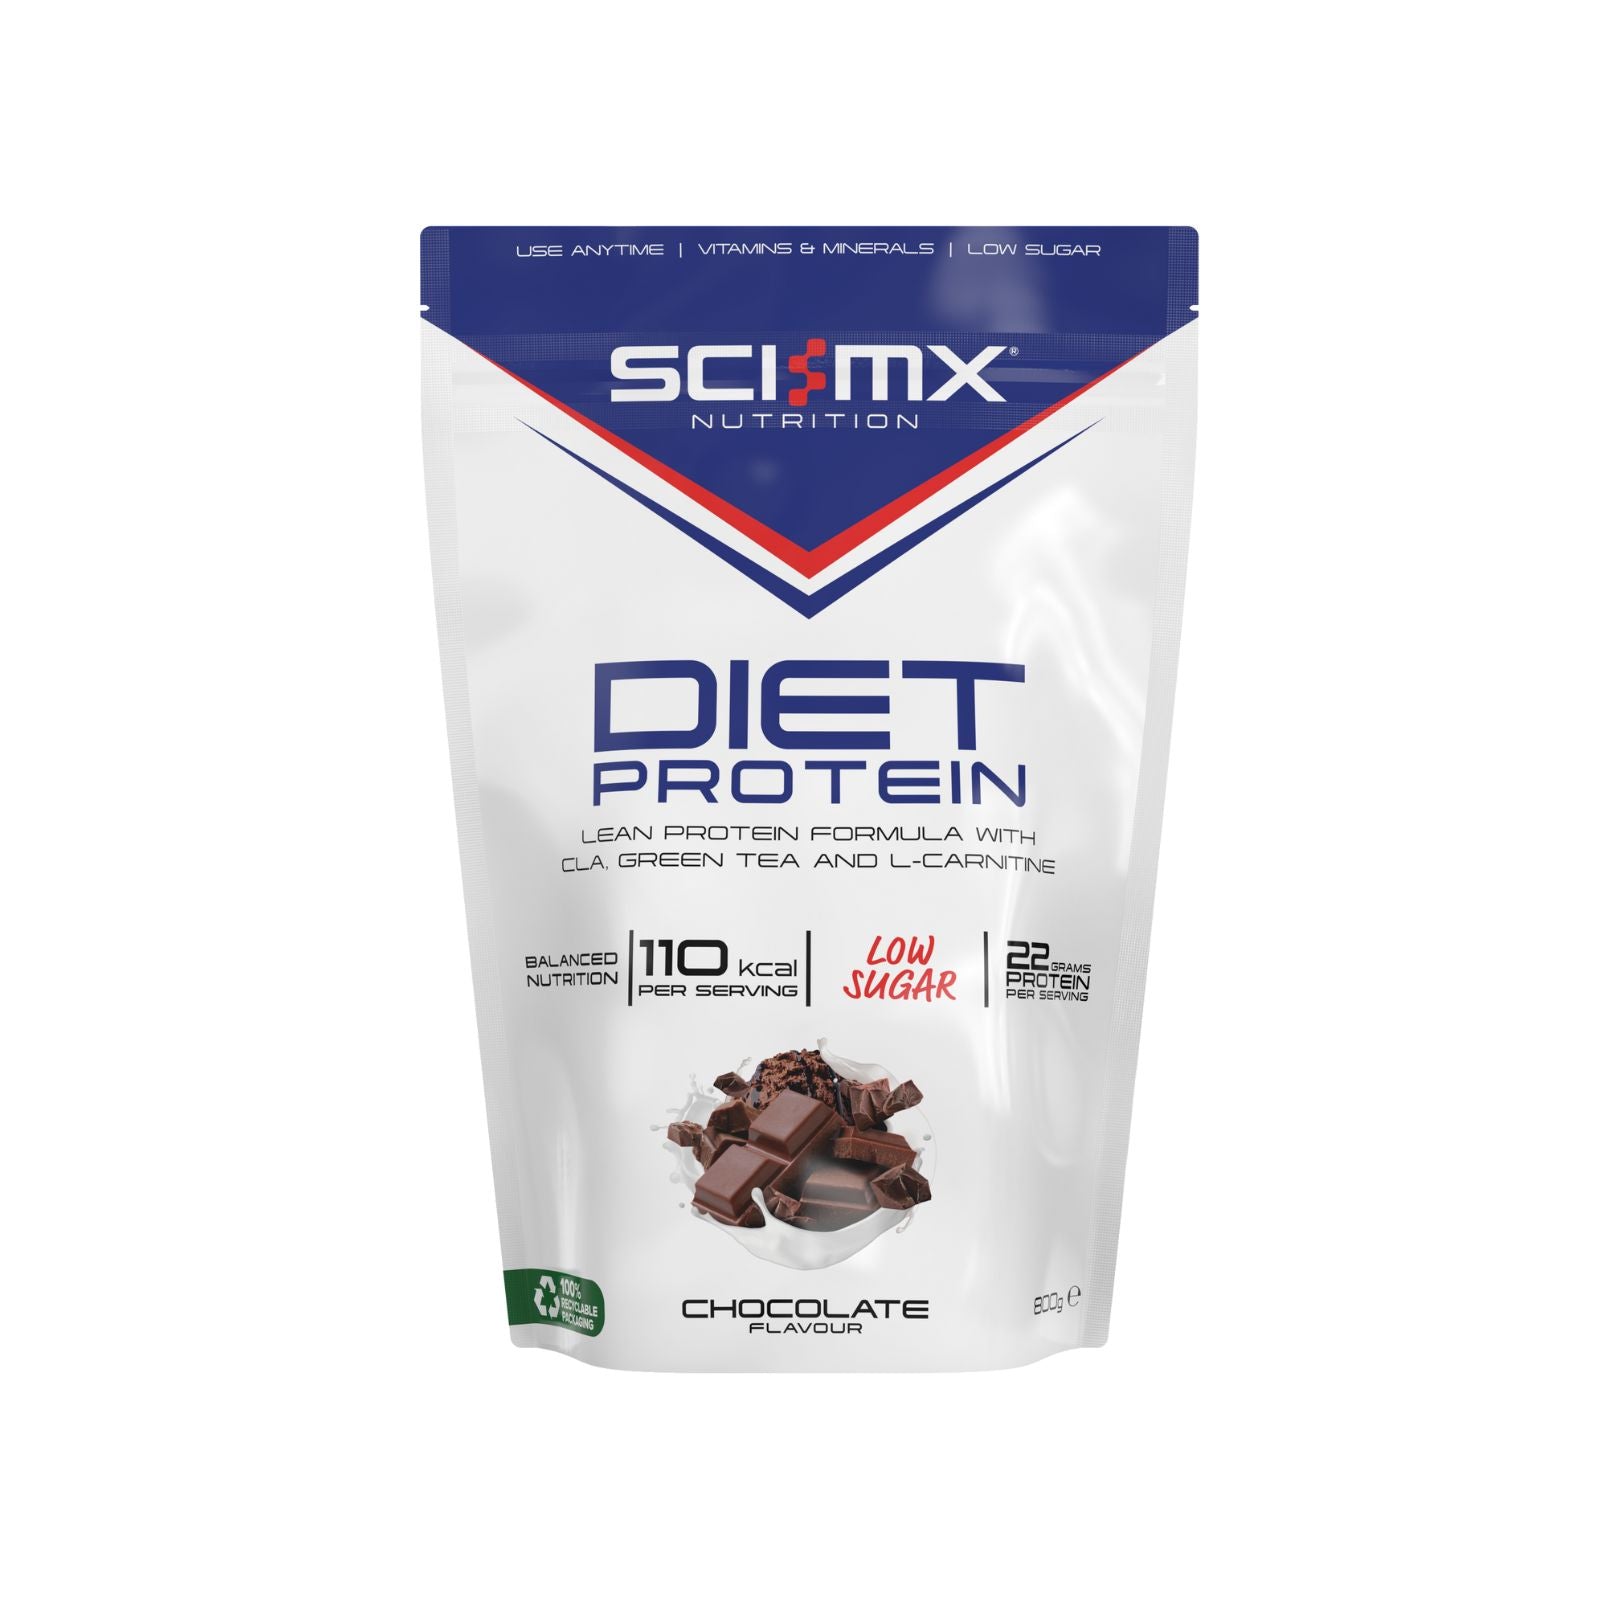 Sci-MX Diet Protein - Chocolate (800g)